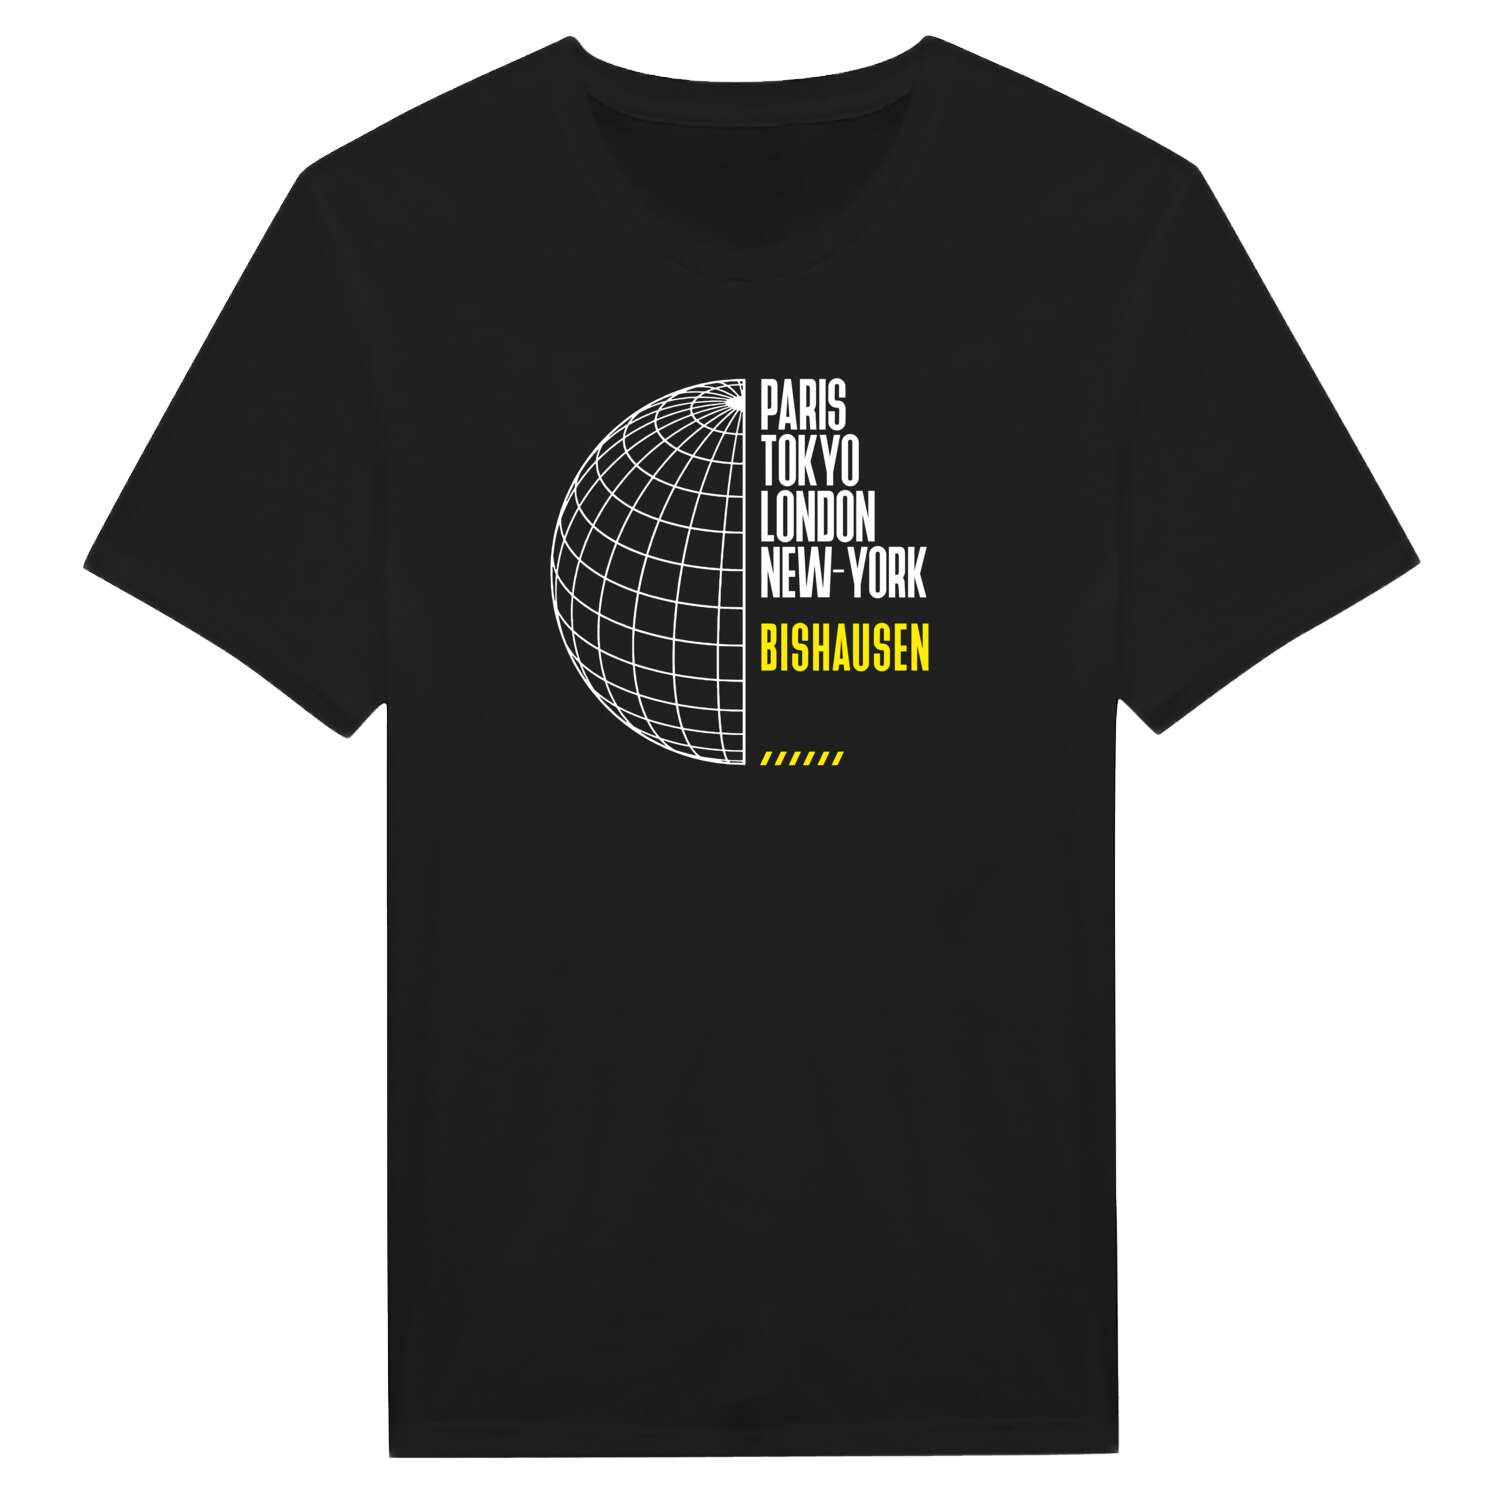 Bishausen T-Shirt »Paris Tokyo London«